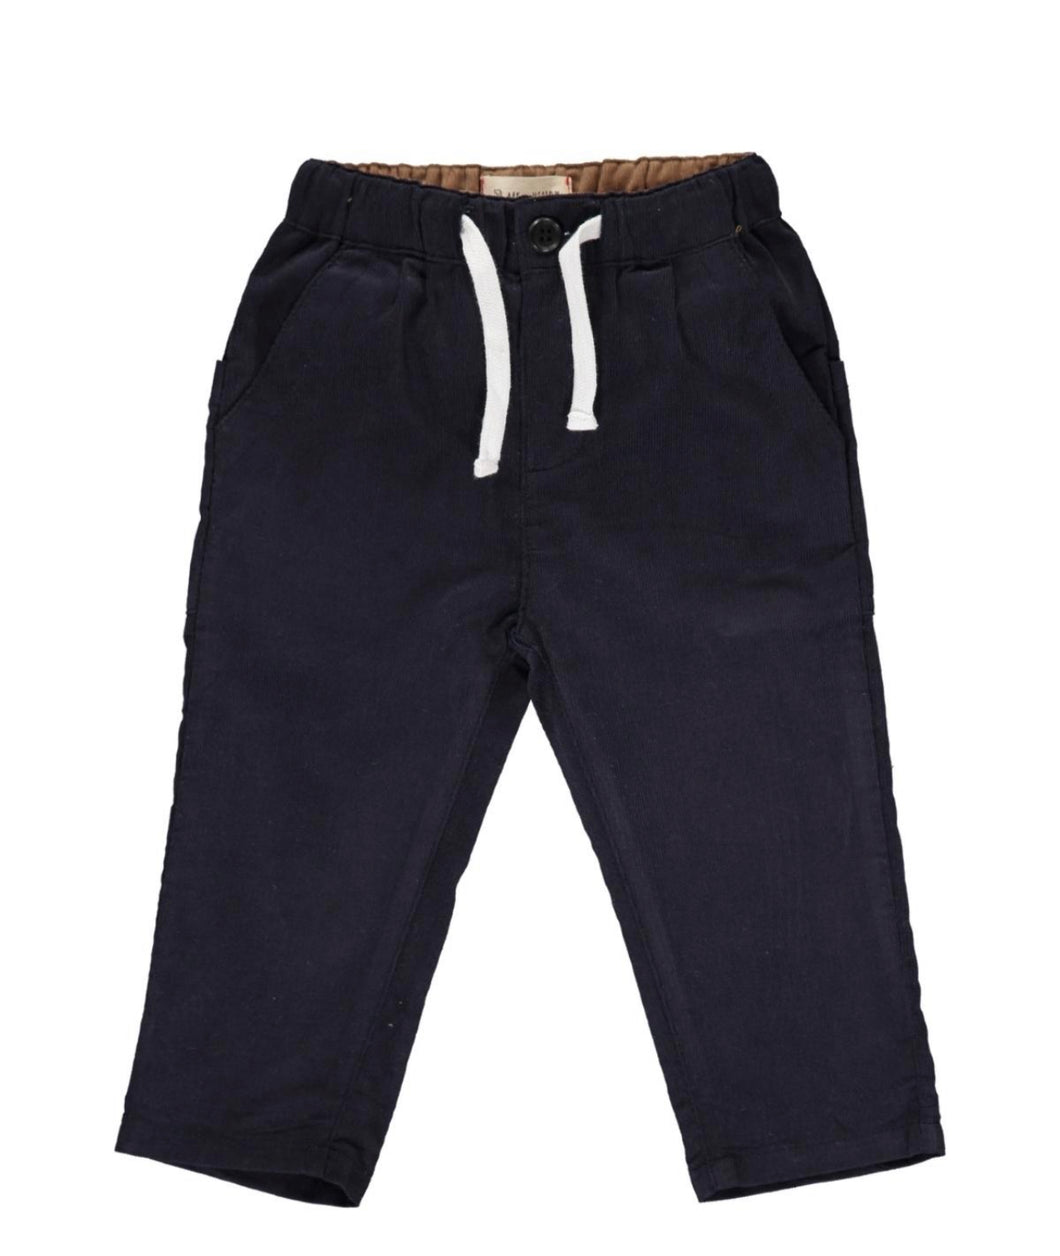 Boys Navy Cord Pants